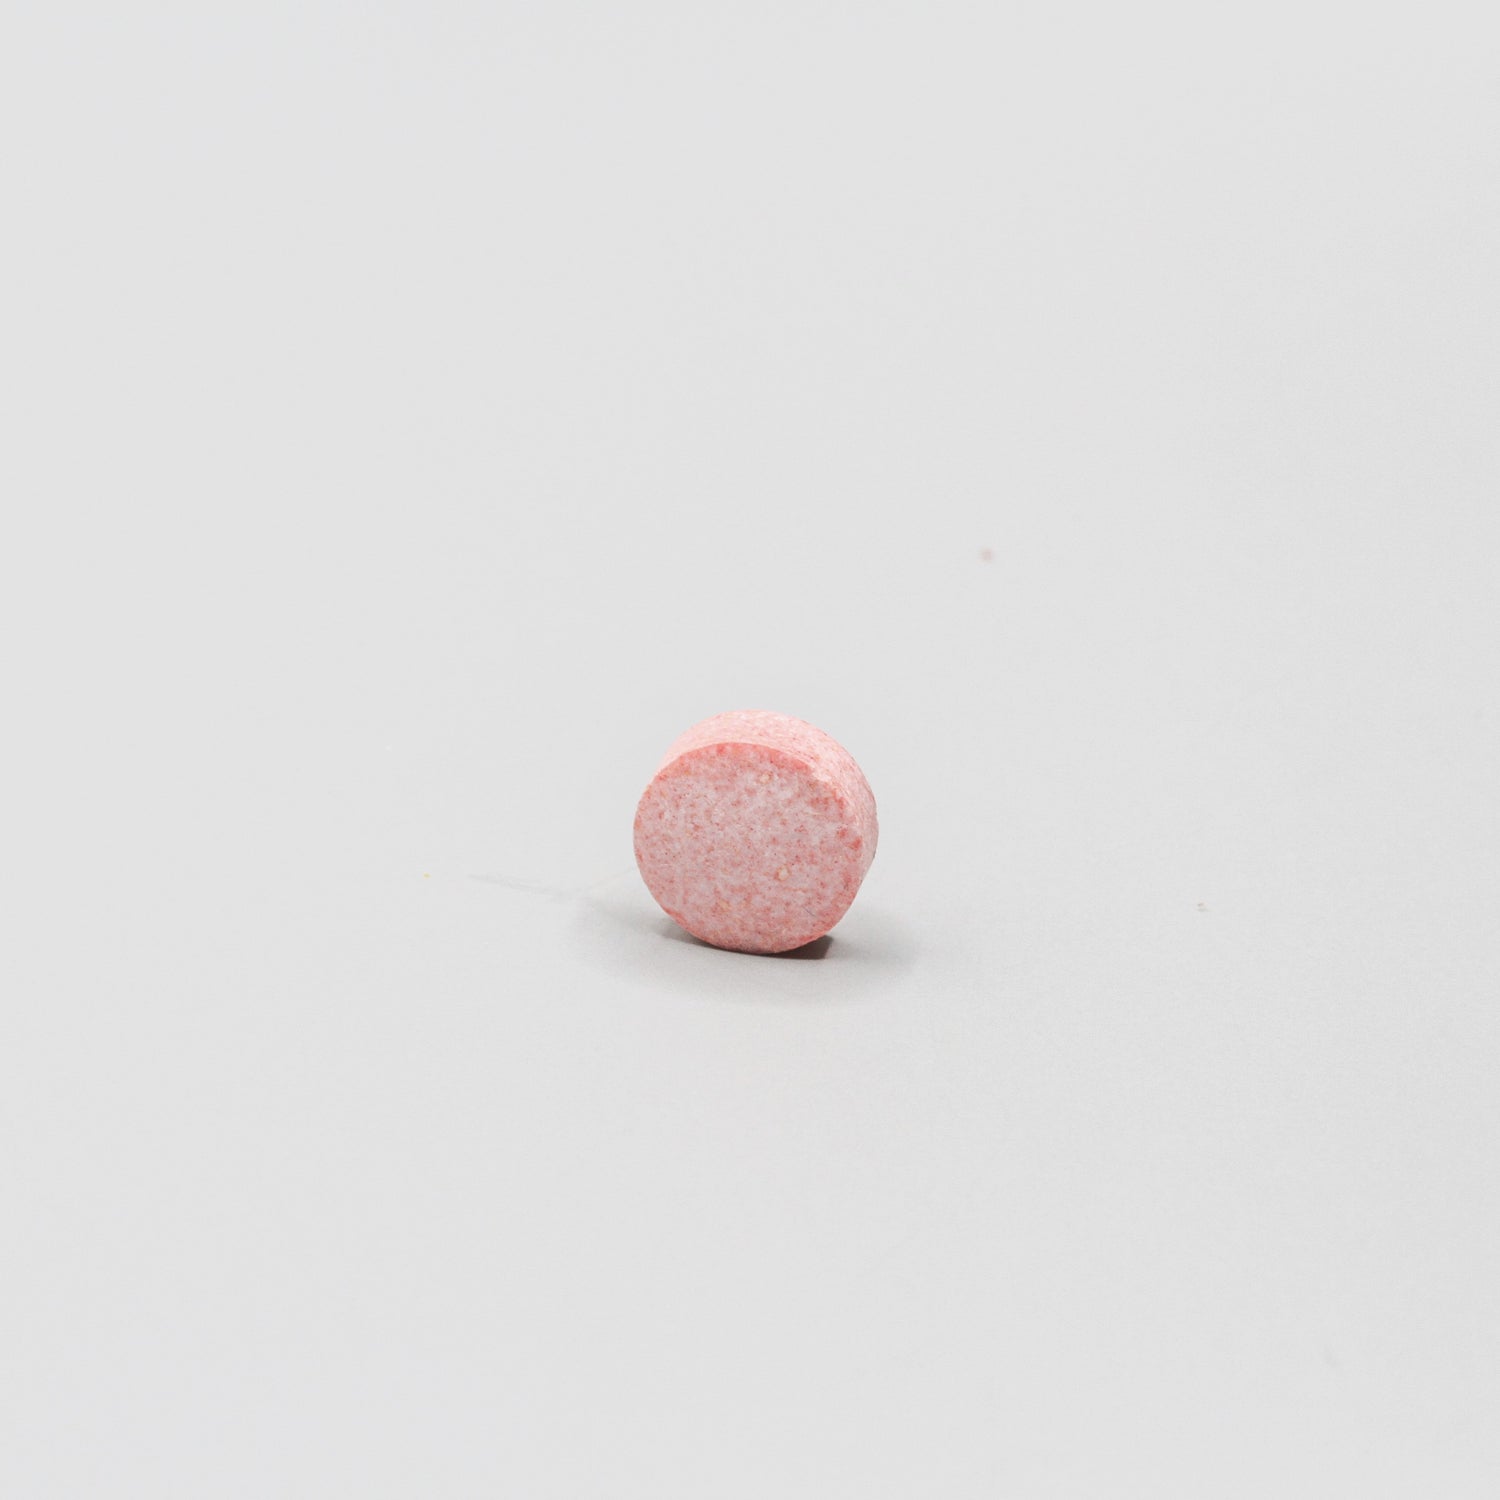 Round reddish pill